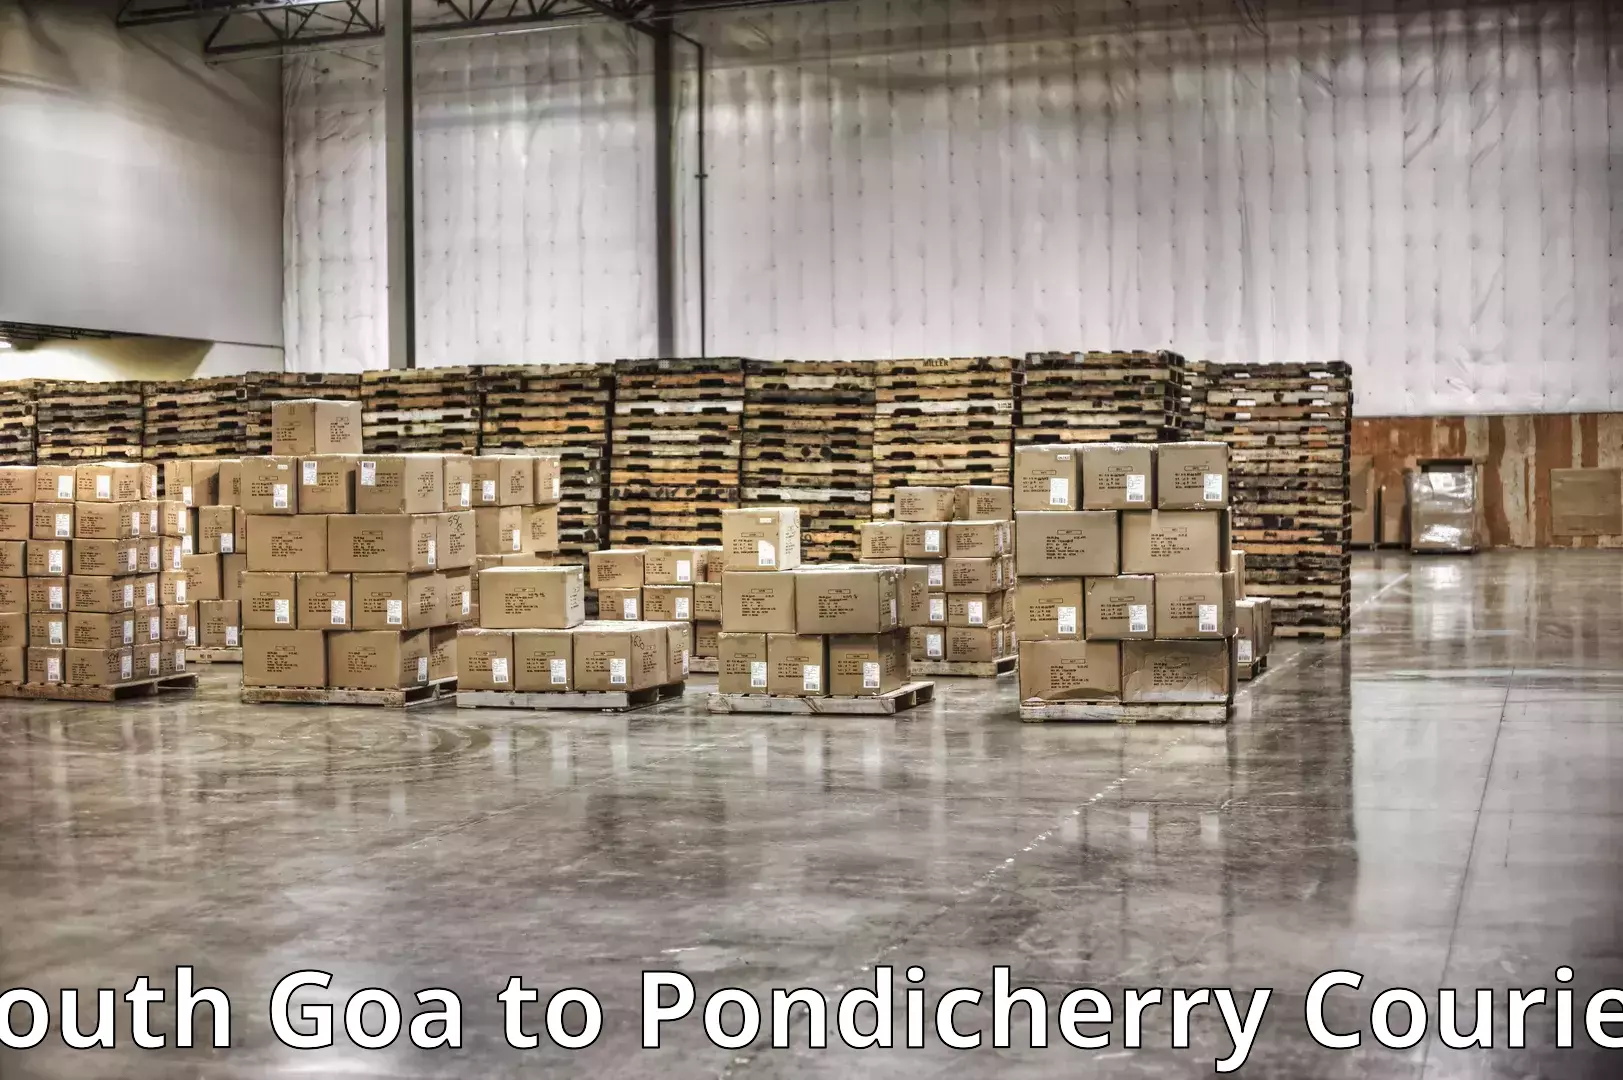 Premium moving services South Goa to Pondicherry